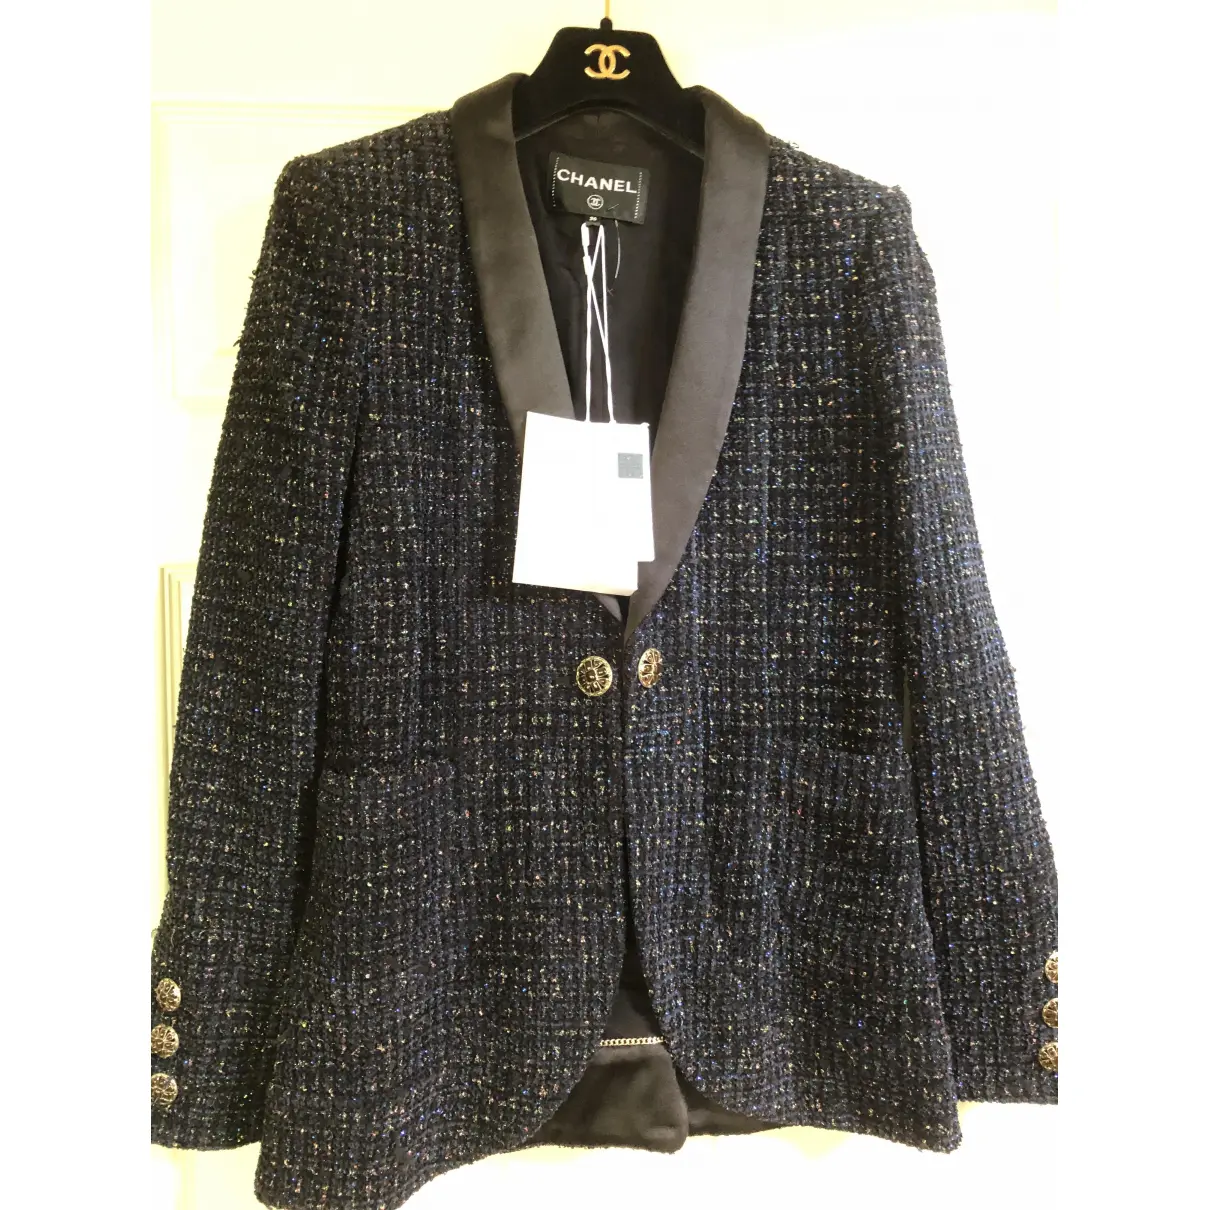 Buy Chanel Tweed blazer online